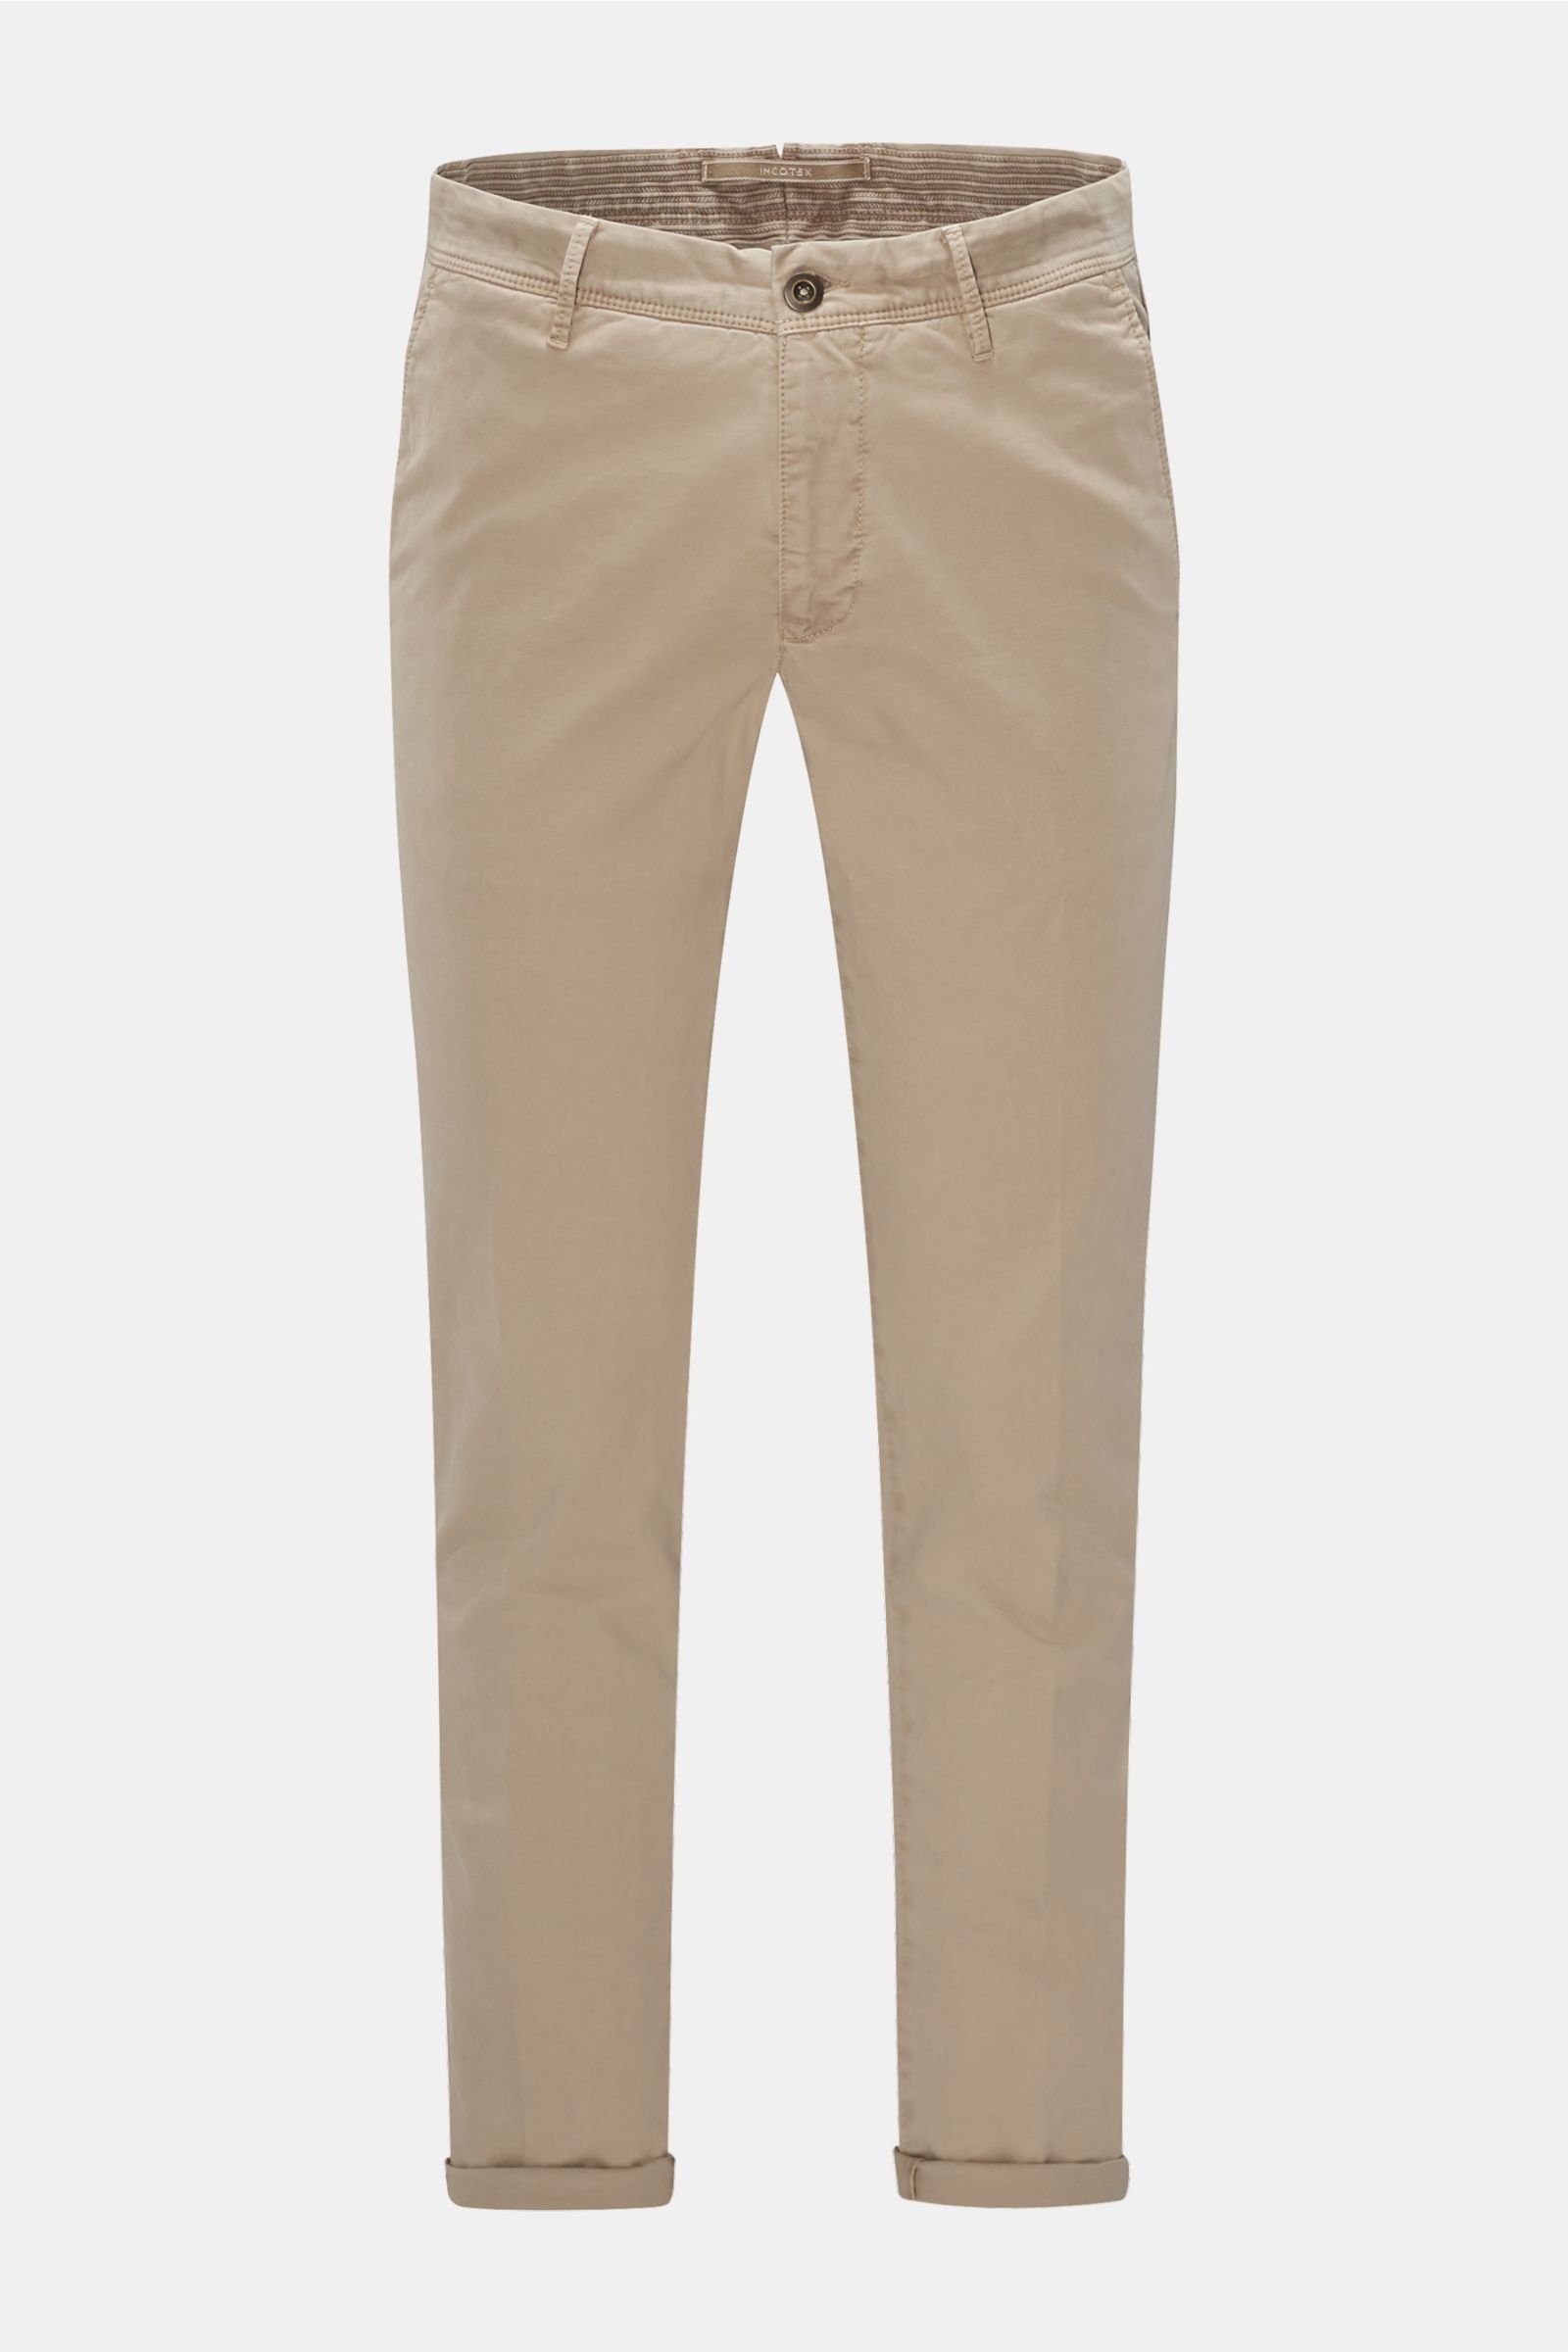 Cotton trousers 'Slacks' beige